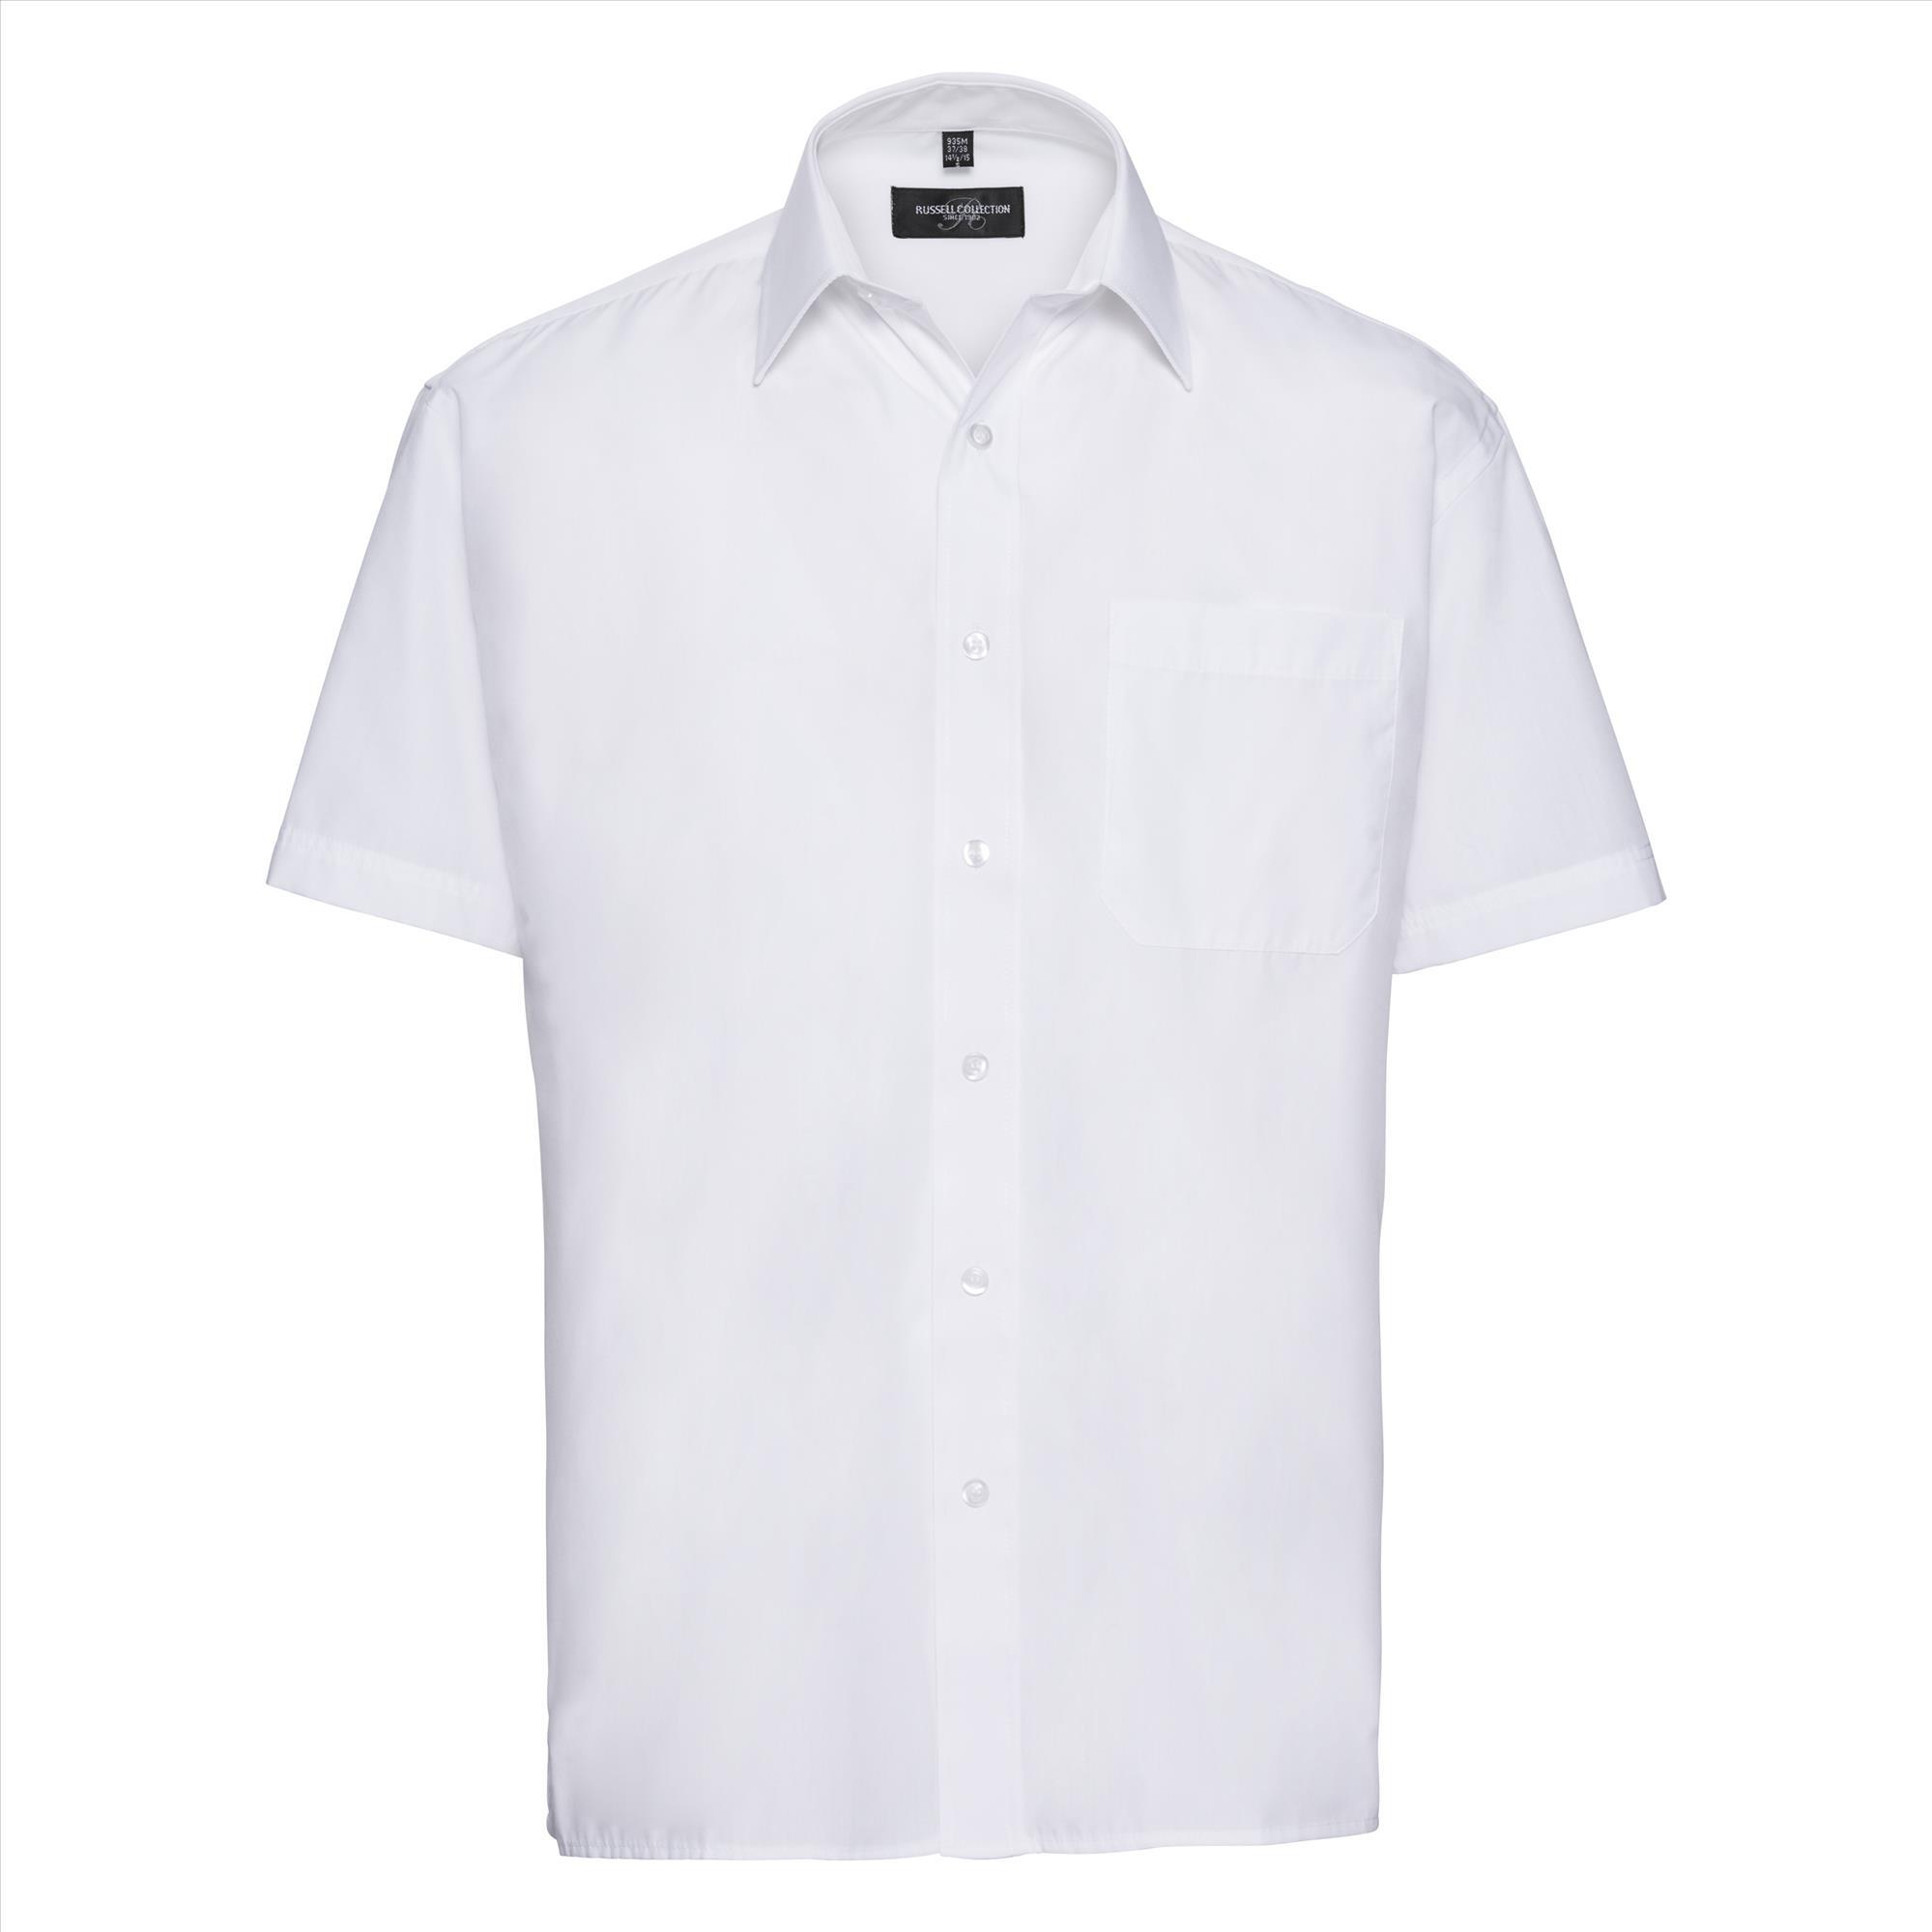 Heren overhemd wit perfect voor bedrijfslogo bedrukking